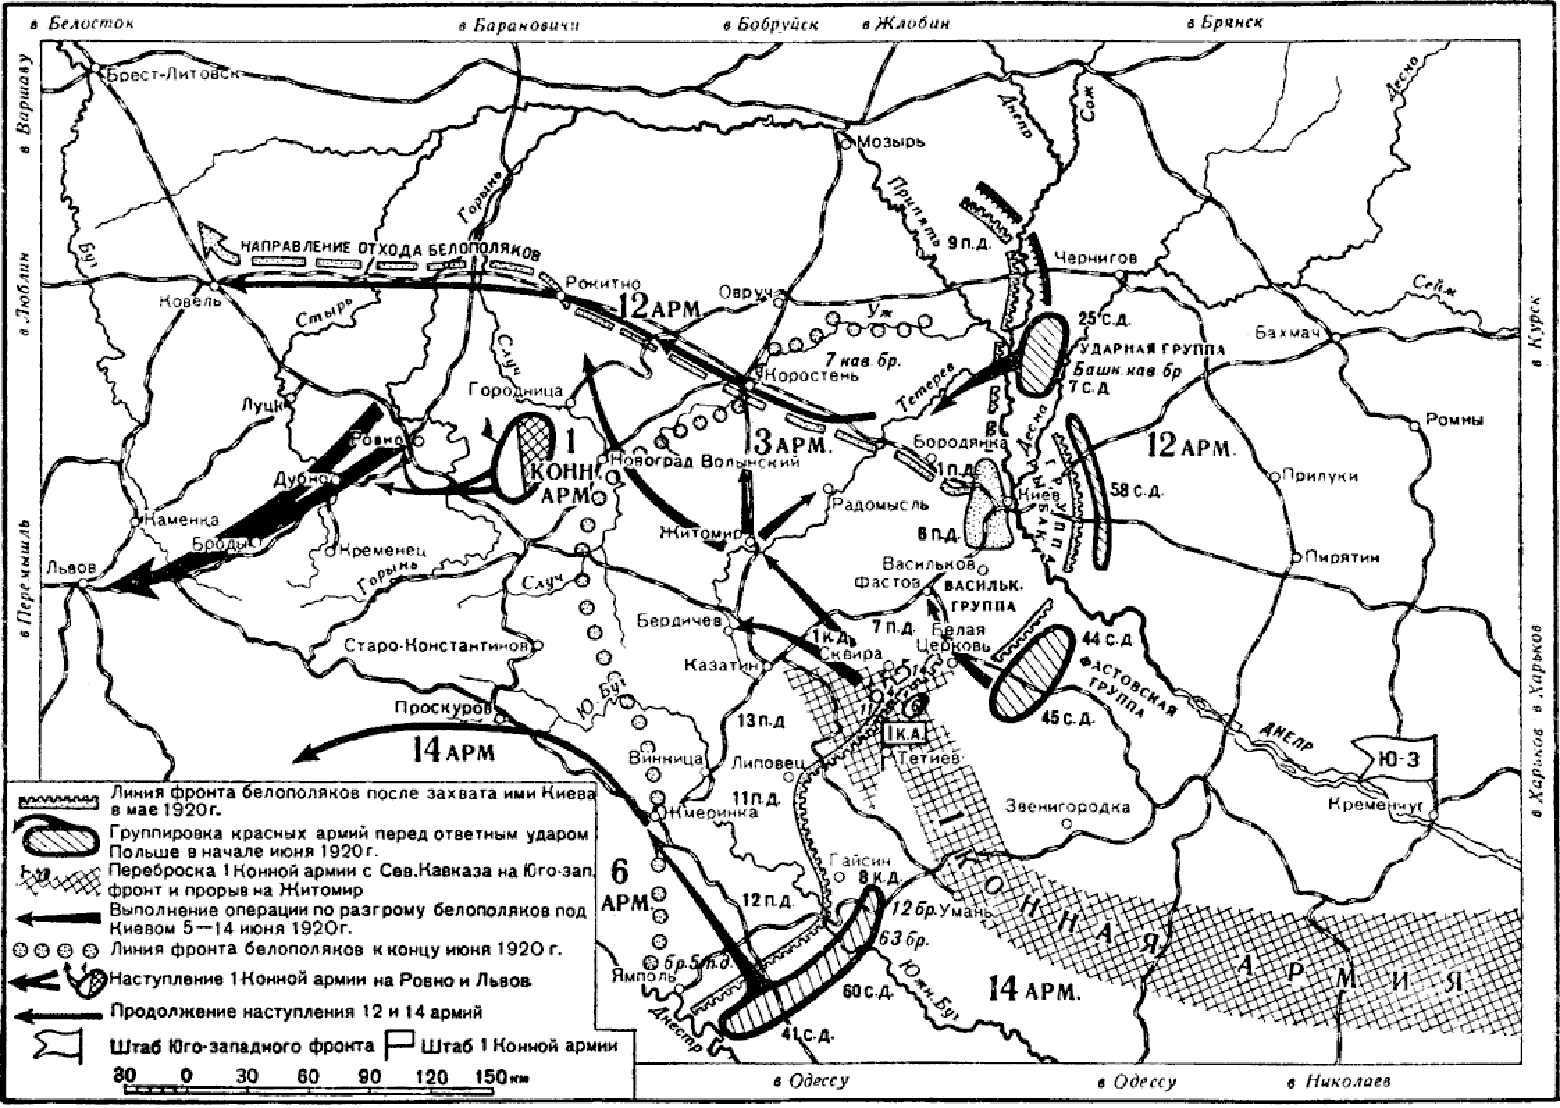 Наступление красной армии от линии фронта. Карта гражданской войны в России 1917-1922.